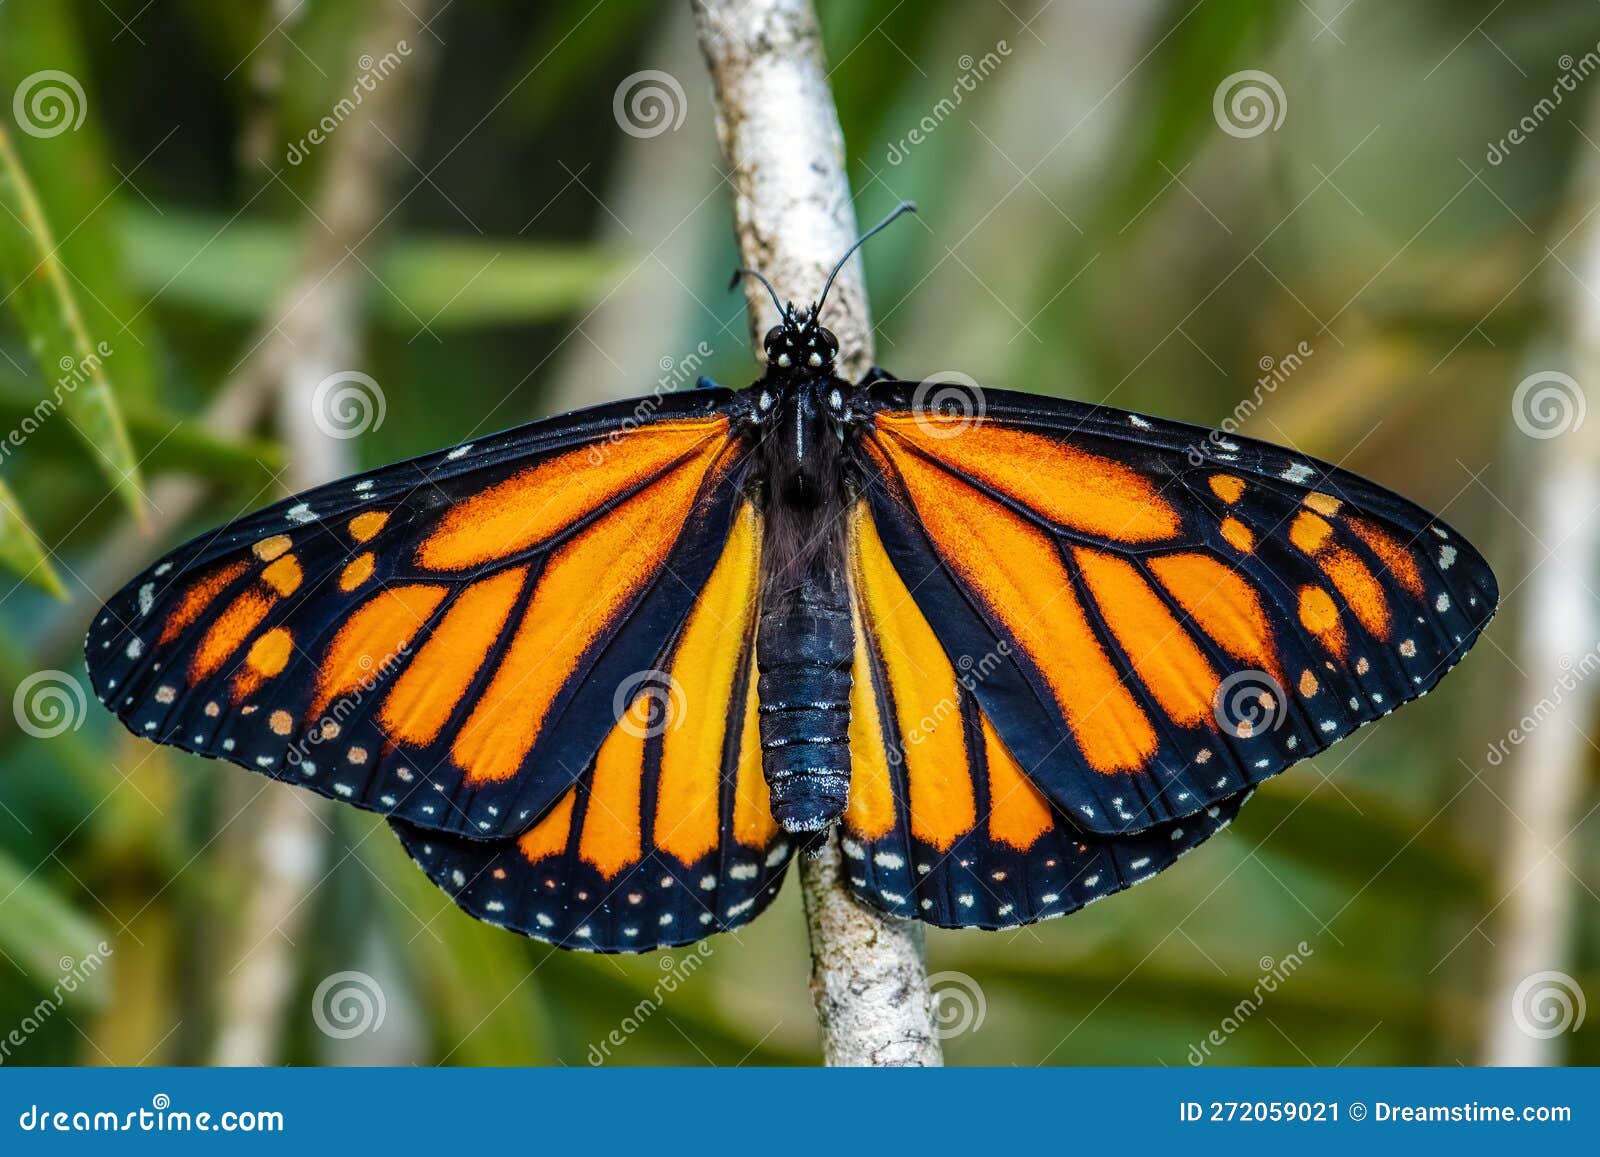 monarch butterfly - danaus plexippus